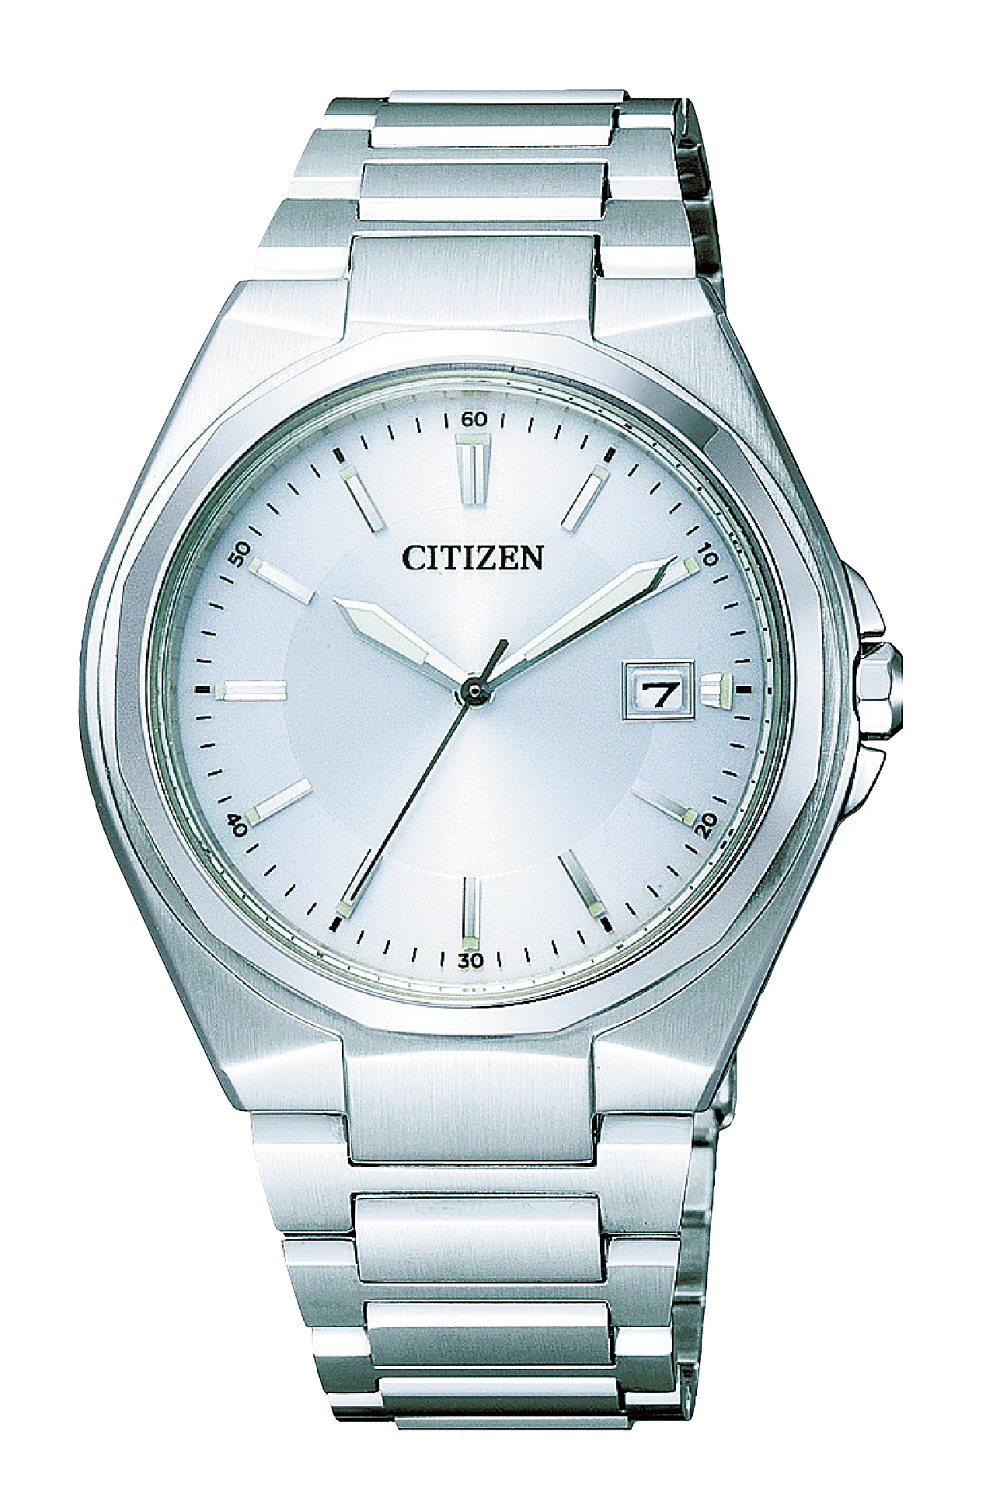 シチズン メンズ腕時計を贈るなら 温泉 旅行カタログギフト Exetime エグゼタイム